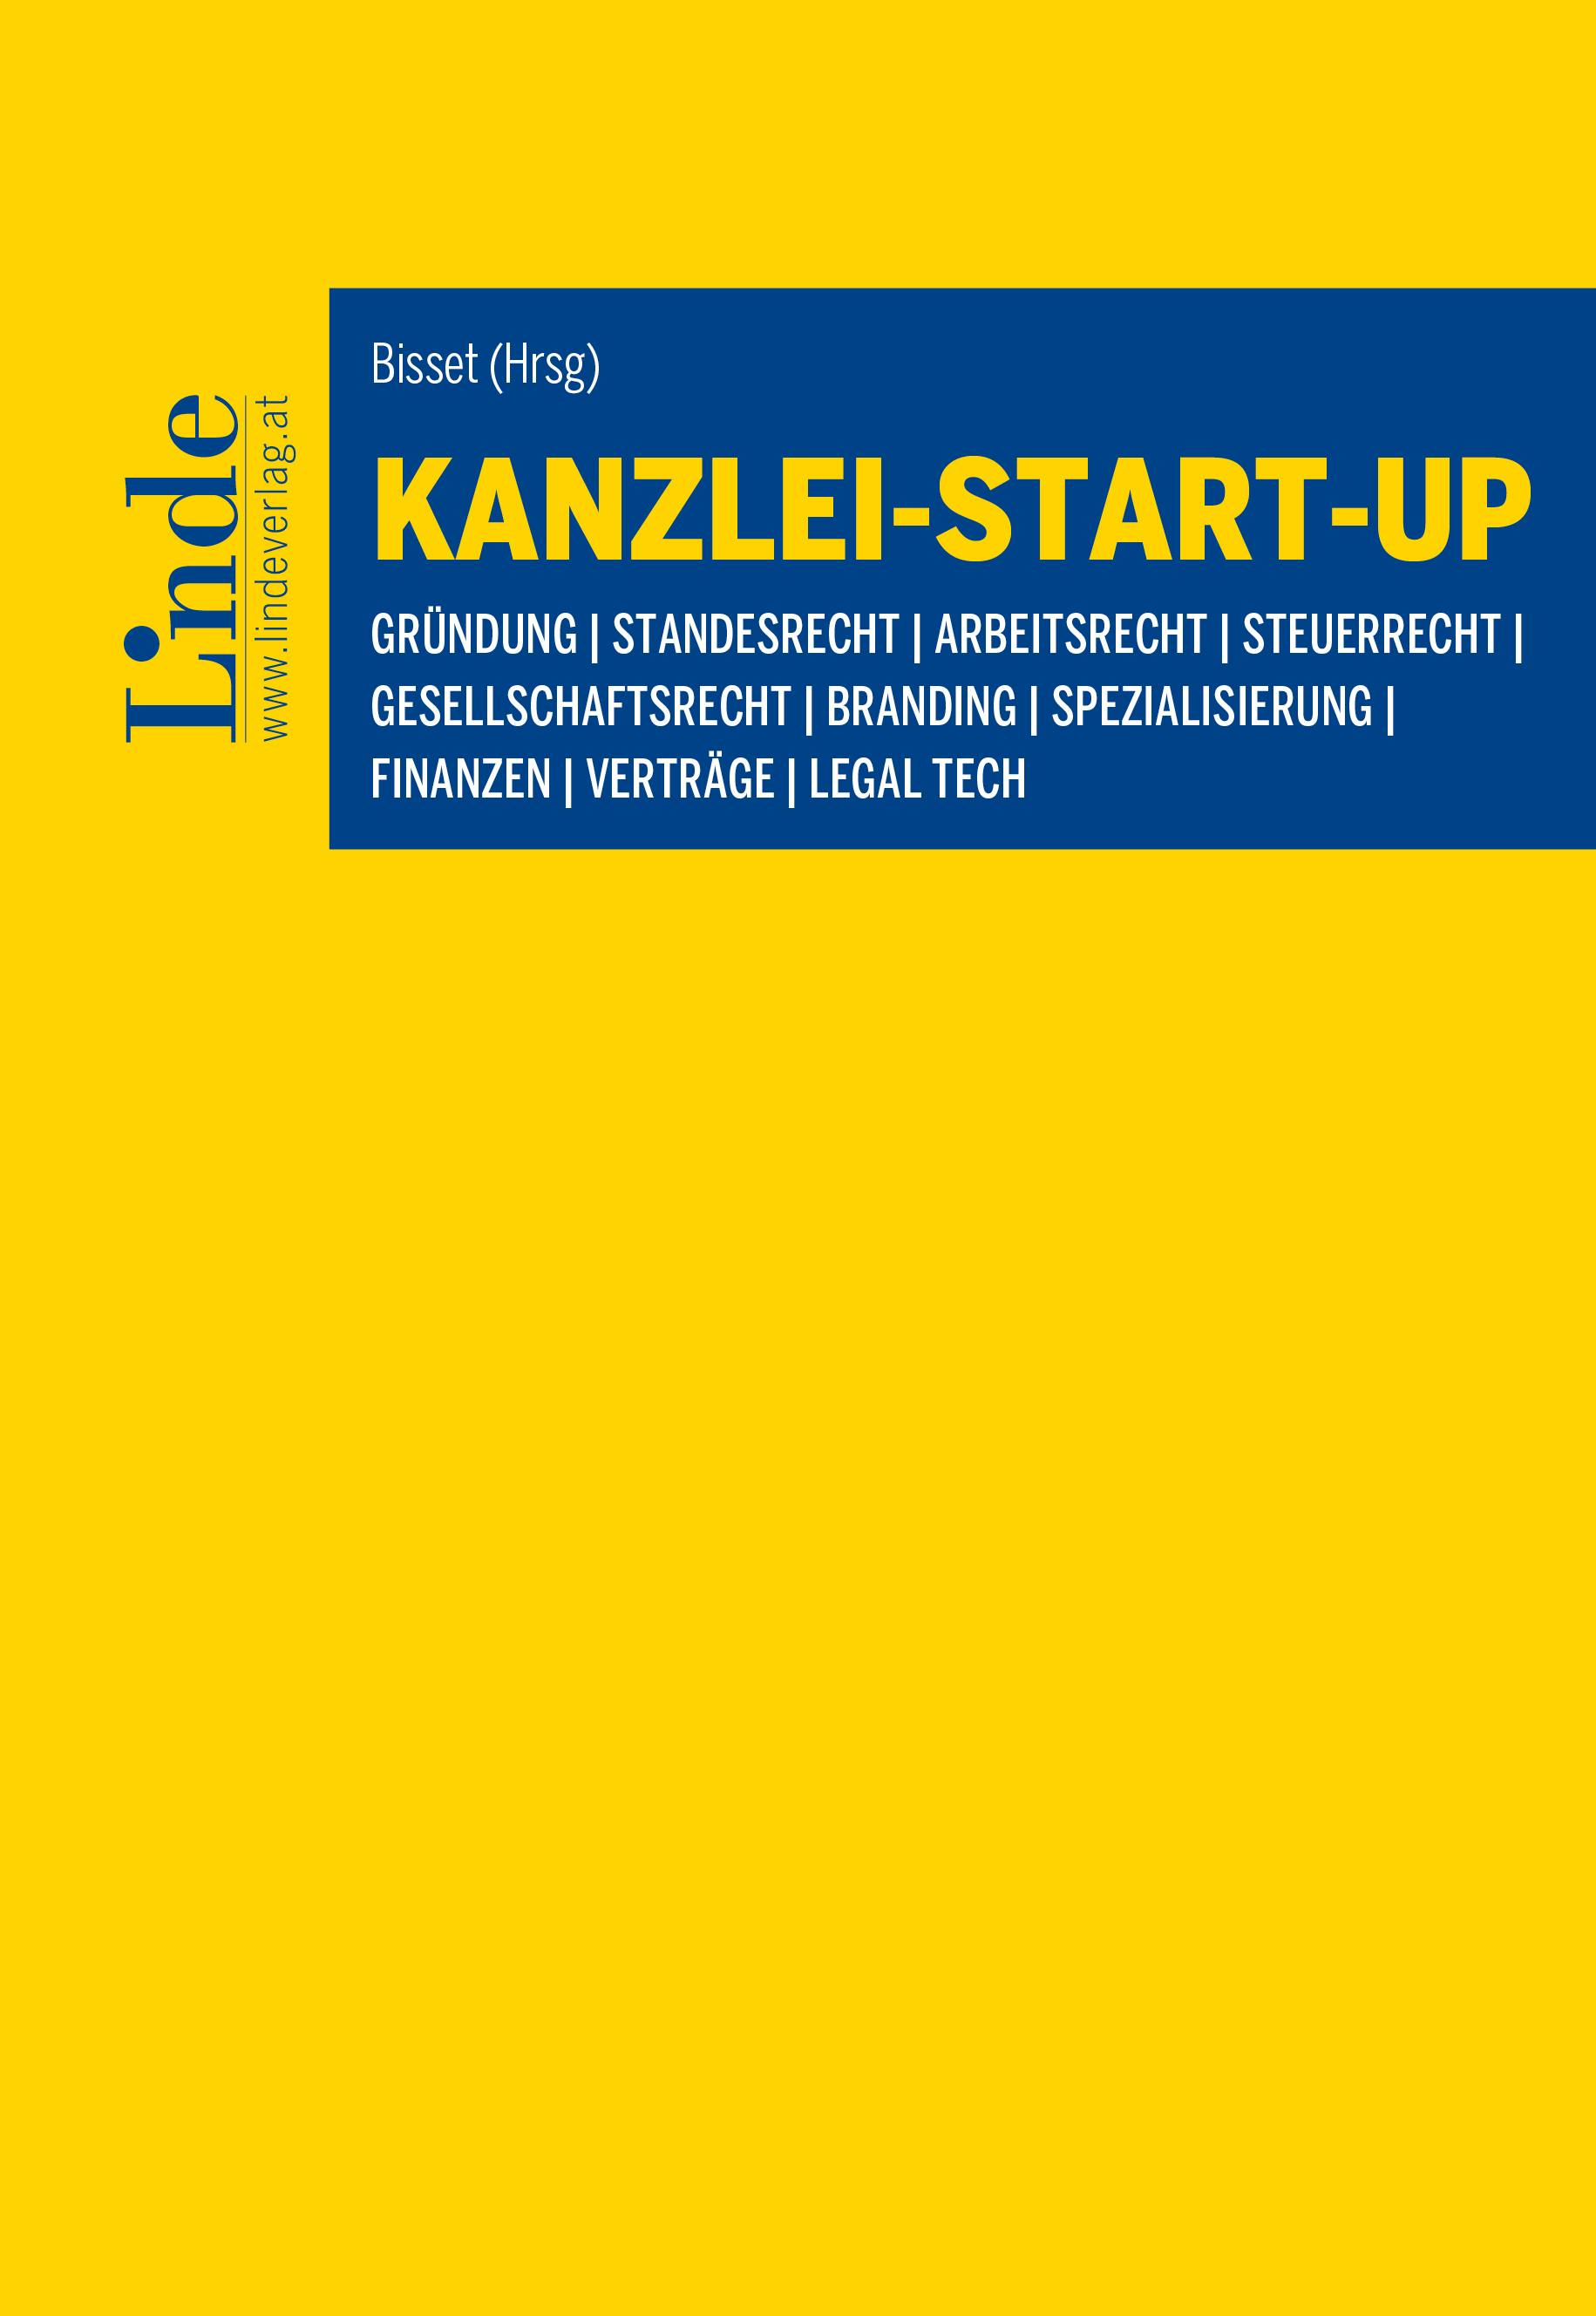 Bisset (Hrsg.)
Kanzlei-Start-up
Gründung | Standesrecht | Arbeitsrecht | Steuerrecht | Gesellschaftsrecht | Branding | Spezialisierung | Finanzen | Verträge | Legal Tech